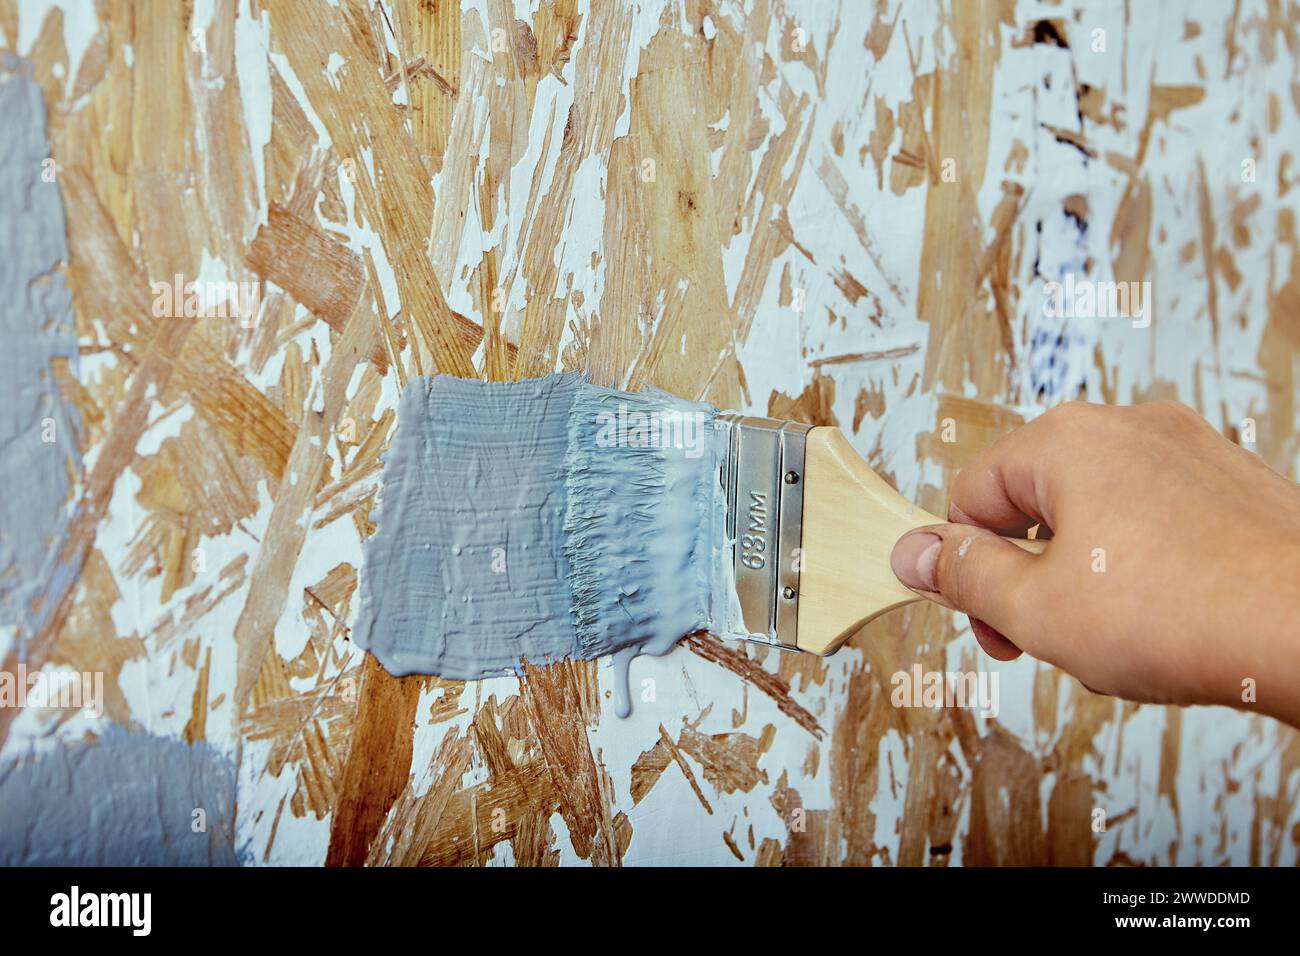 Pinsel in der Hand des Bauarbeiters, Hausmaler wendet Pinselstriche mit grauer Farbe auf die Spanplattenwand an. Stockfoto